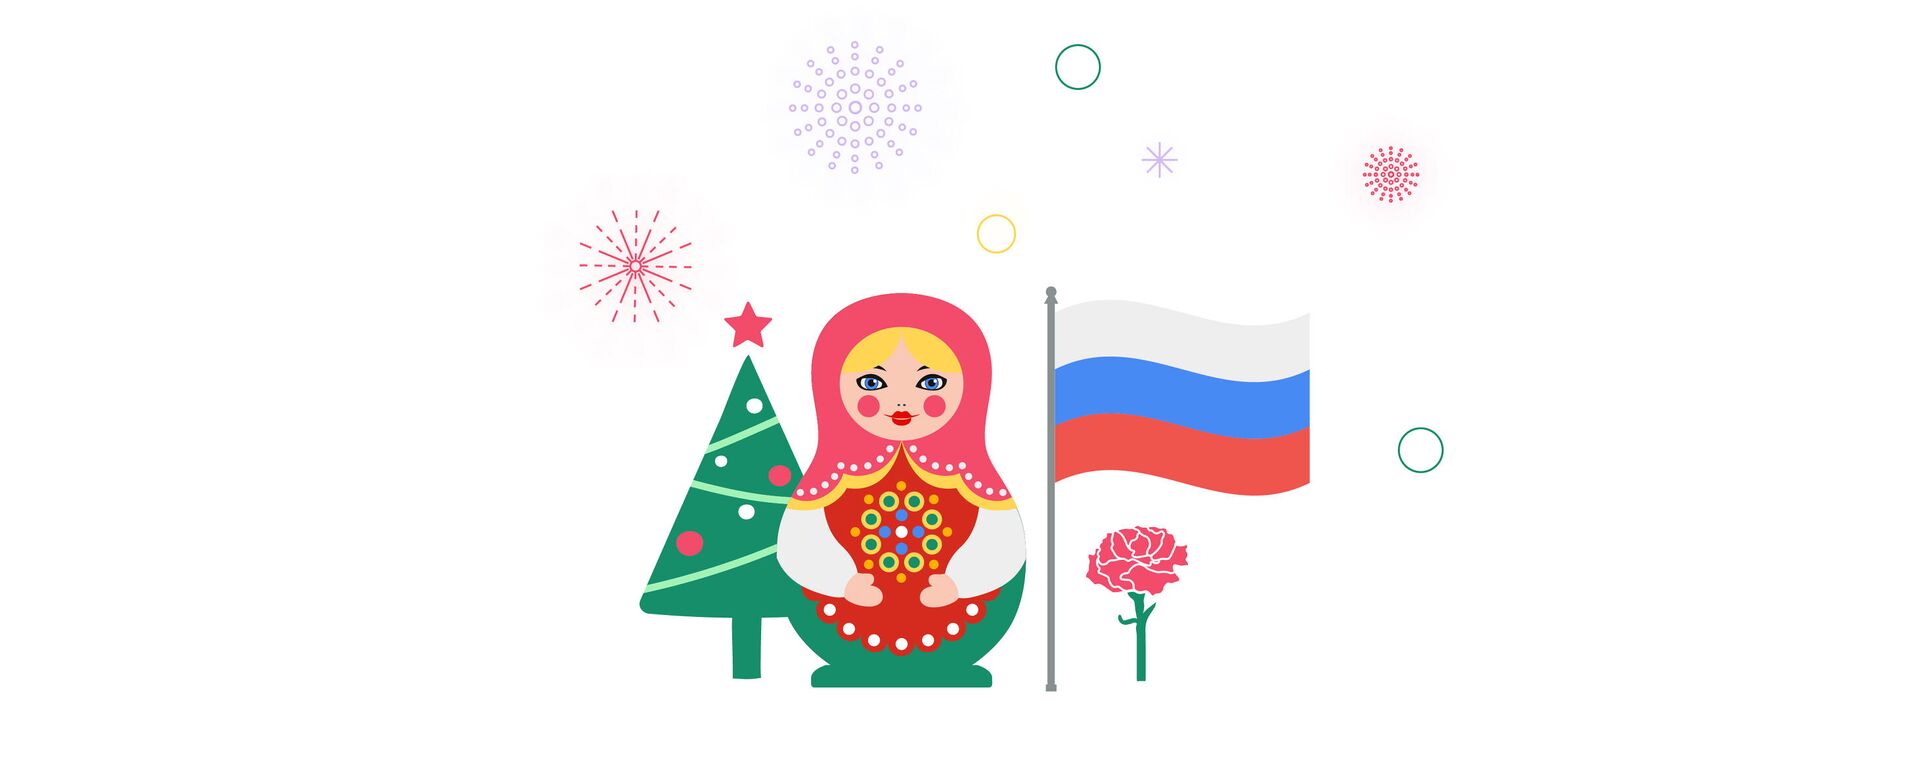 Выходные и праздничные дни в России в 2021 году - Sputnik Таджикистан, 1920, 27.11.2020